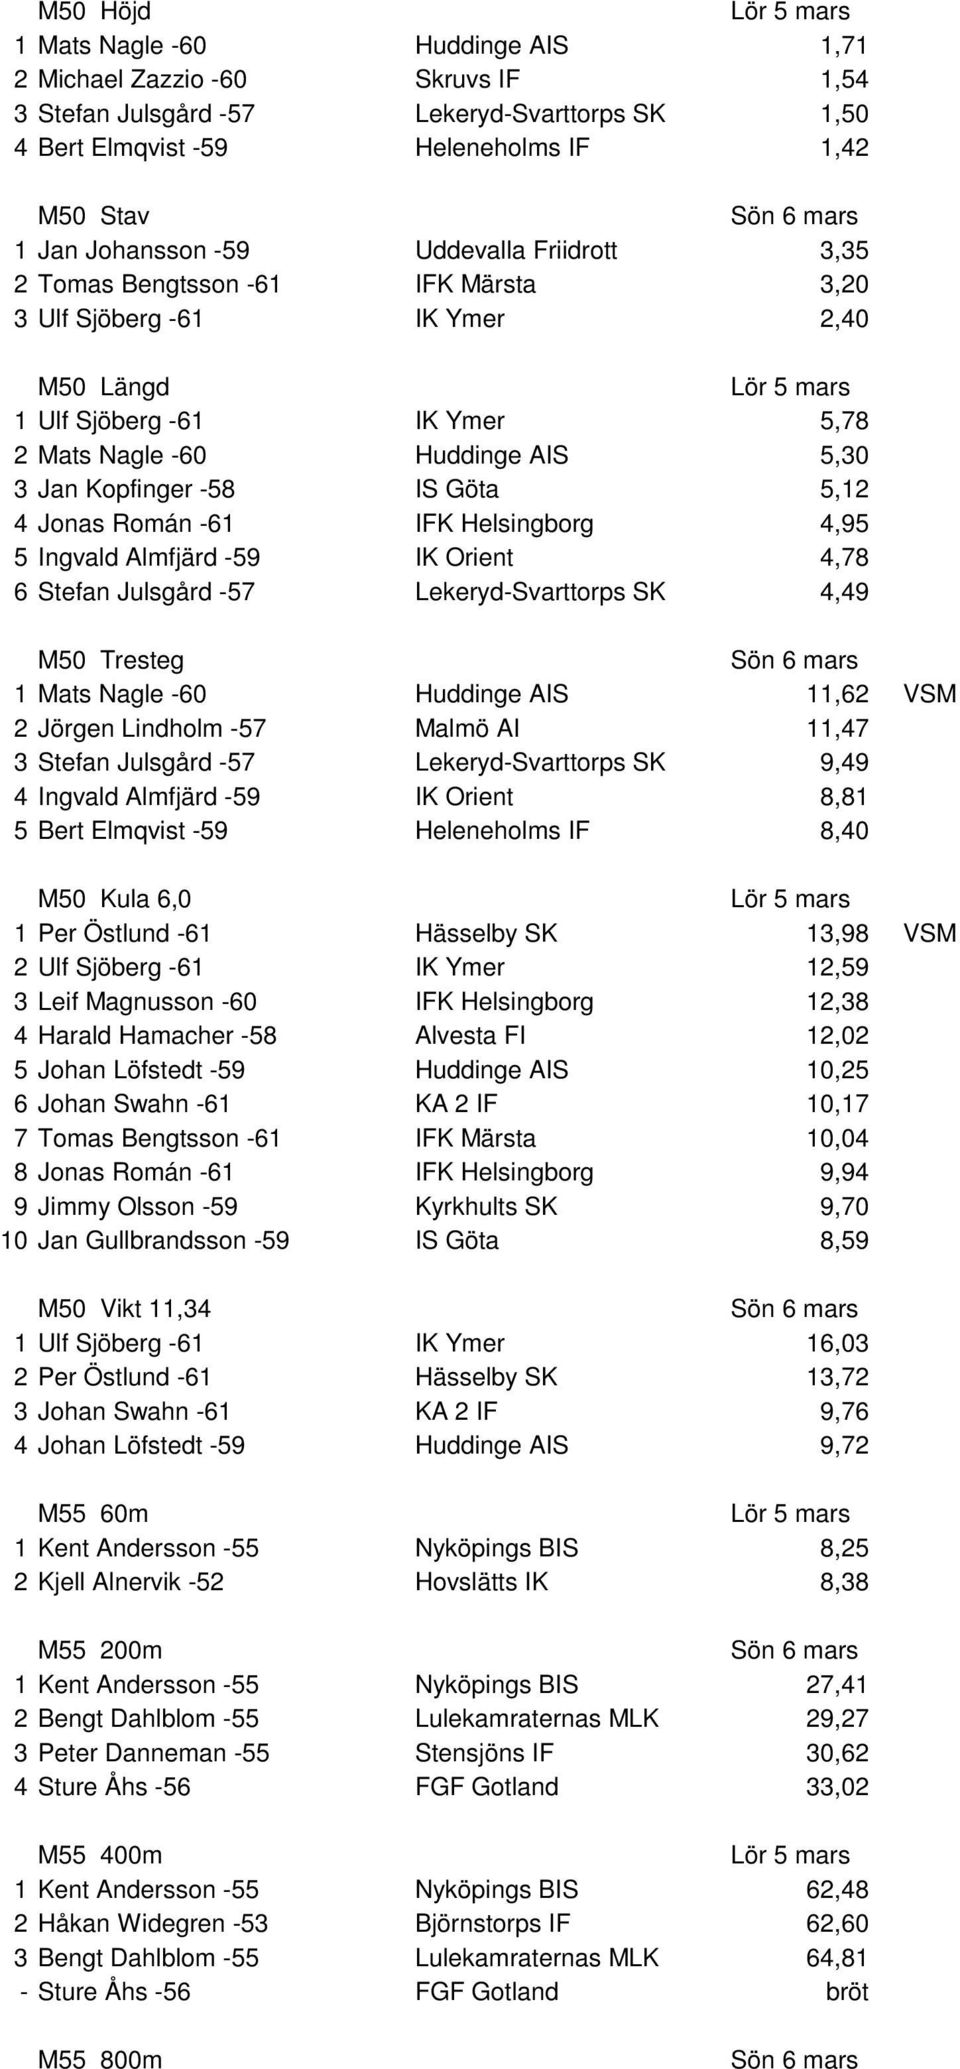 5,12 4 Jonas Román -61 IFK Helsingborg 4,95 5 Ingvald Almfjärd -59 IK Orient 4,78 6 Stefan Julsgård -57 Lekeryd-Svarttorps SK 4,49 M50 Tresteg 1 Mats Nagle -60 Huddinge AIS 11,62 VSM 2 Jörgen